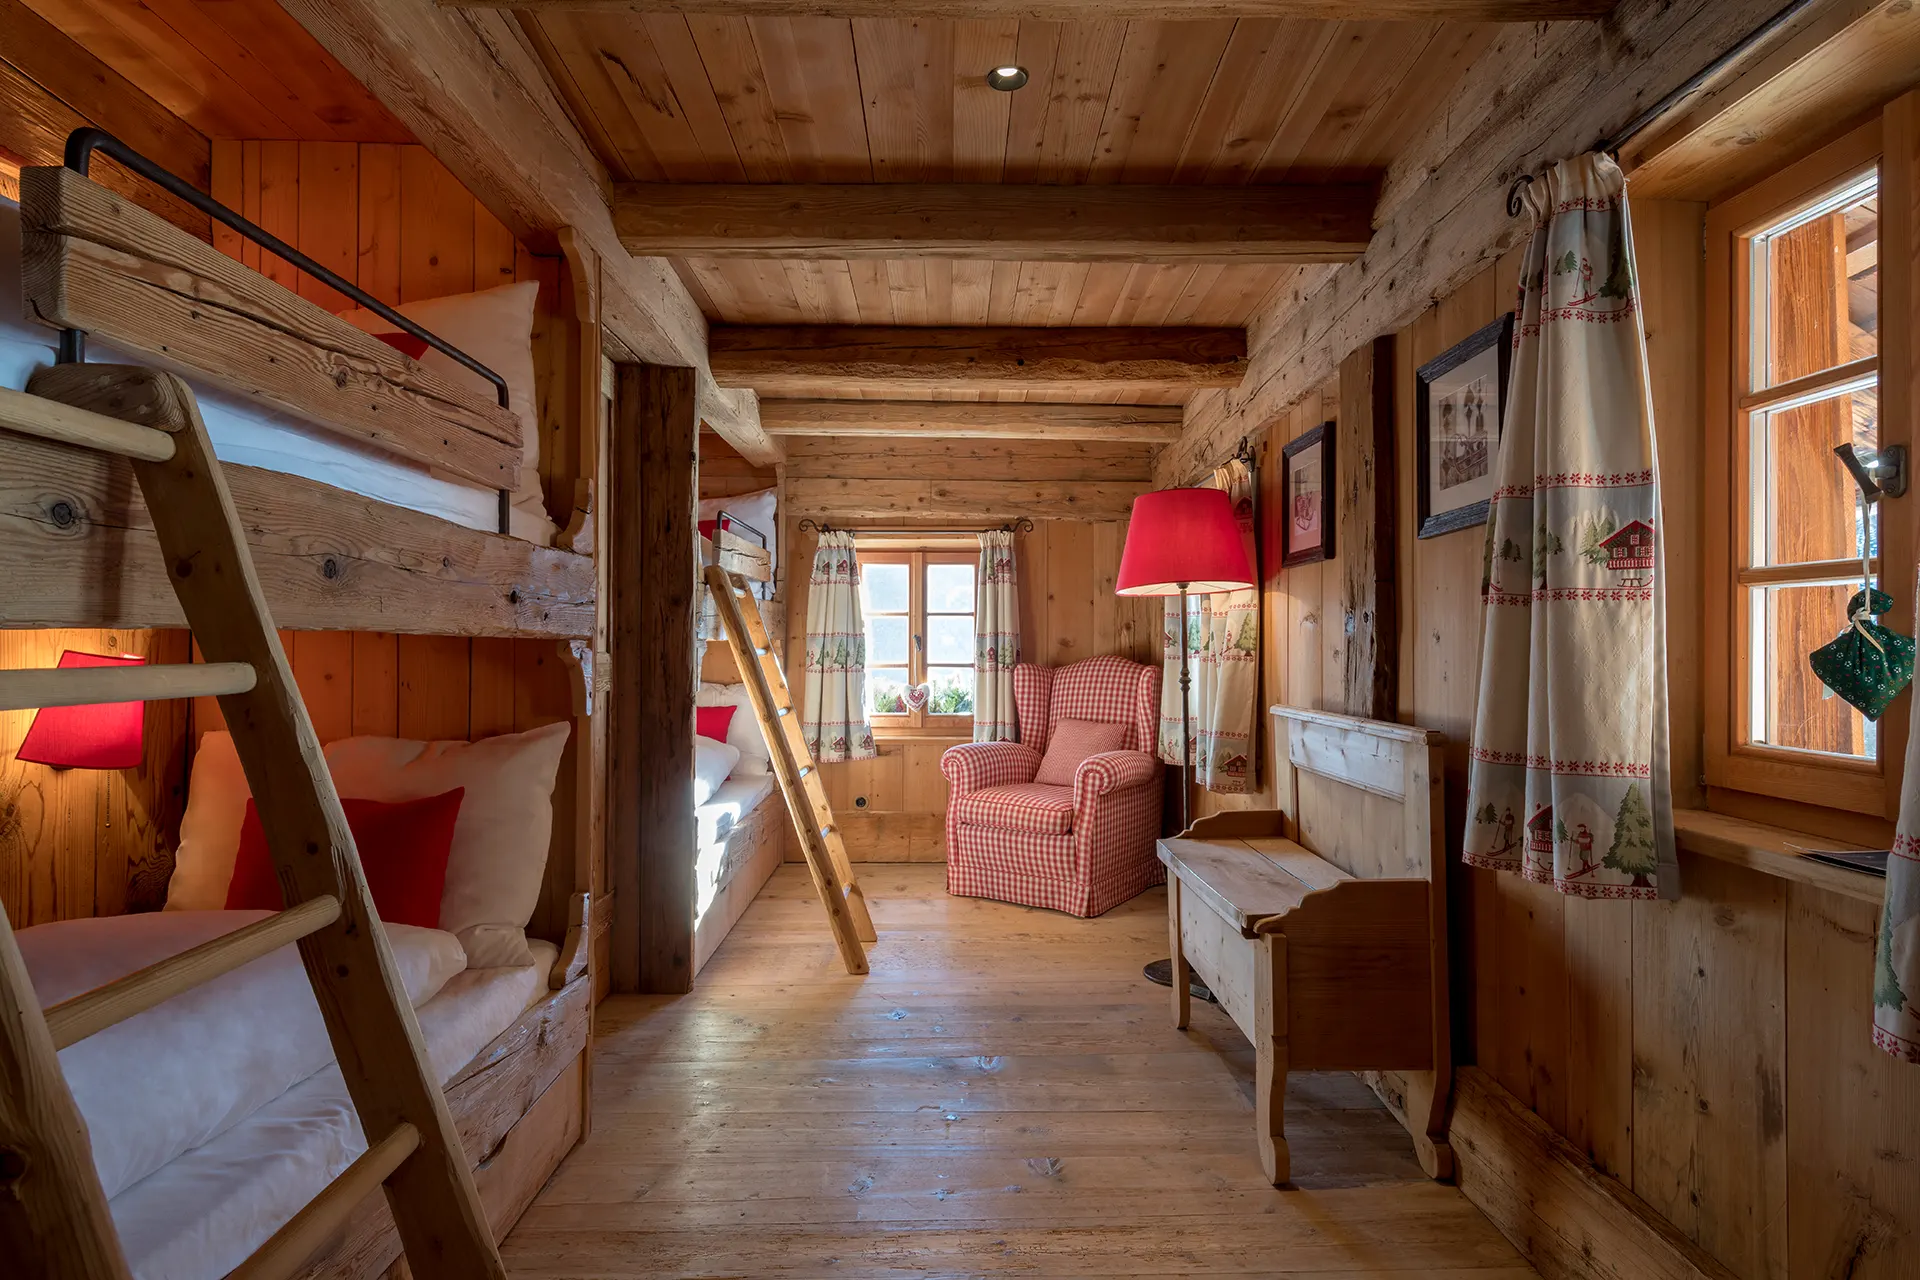 Kinderzimmer mit mehreren Stockbetten aus Holz